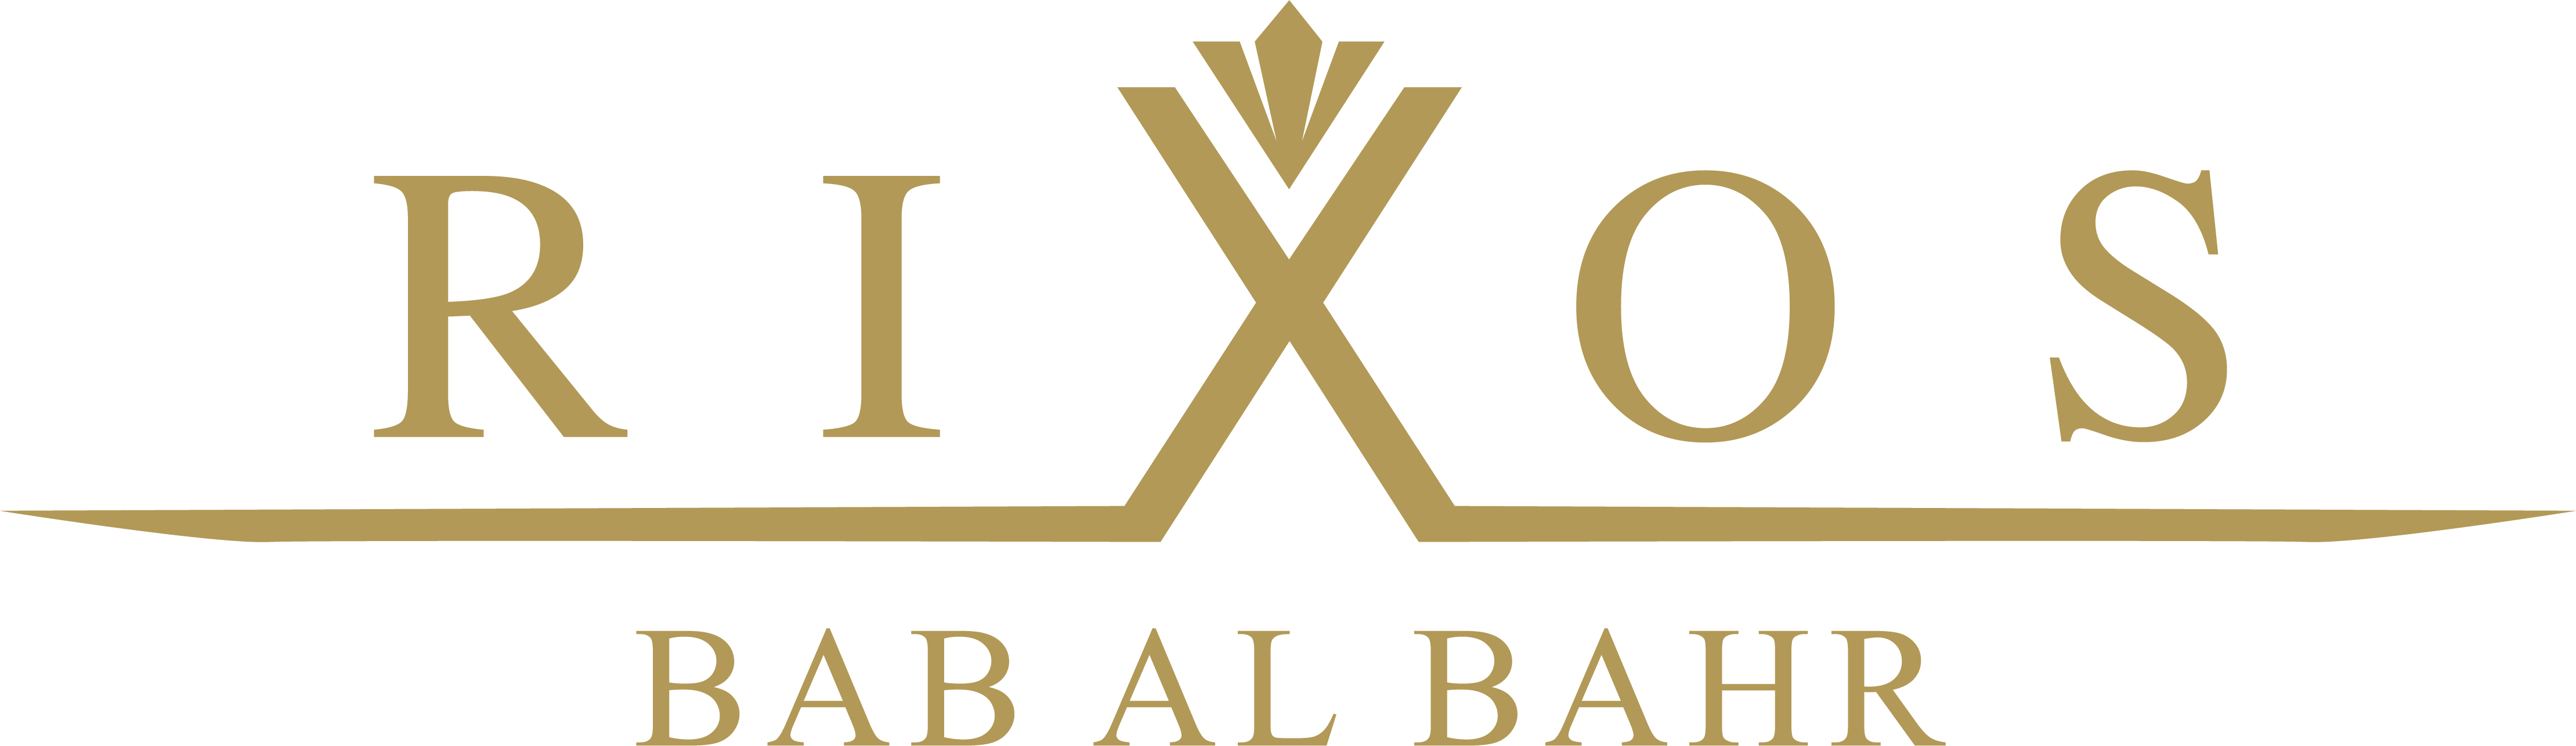 rixos hotel logo